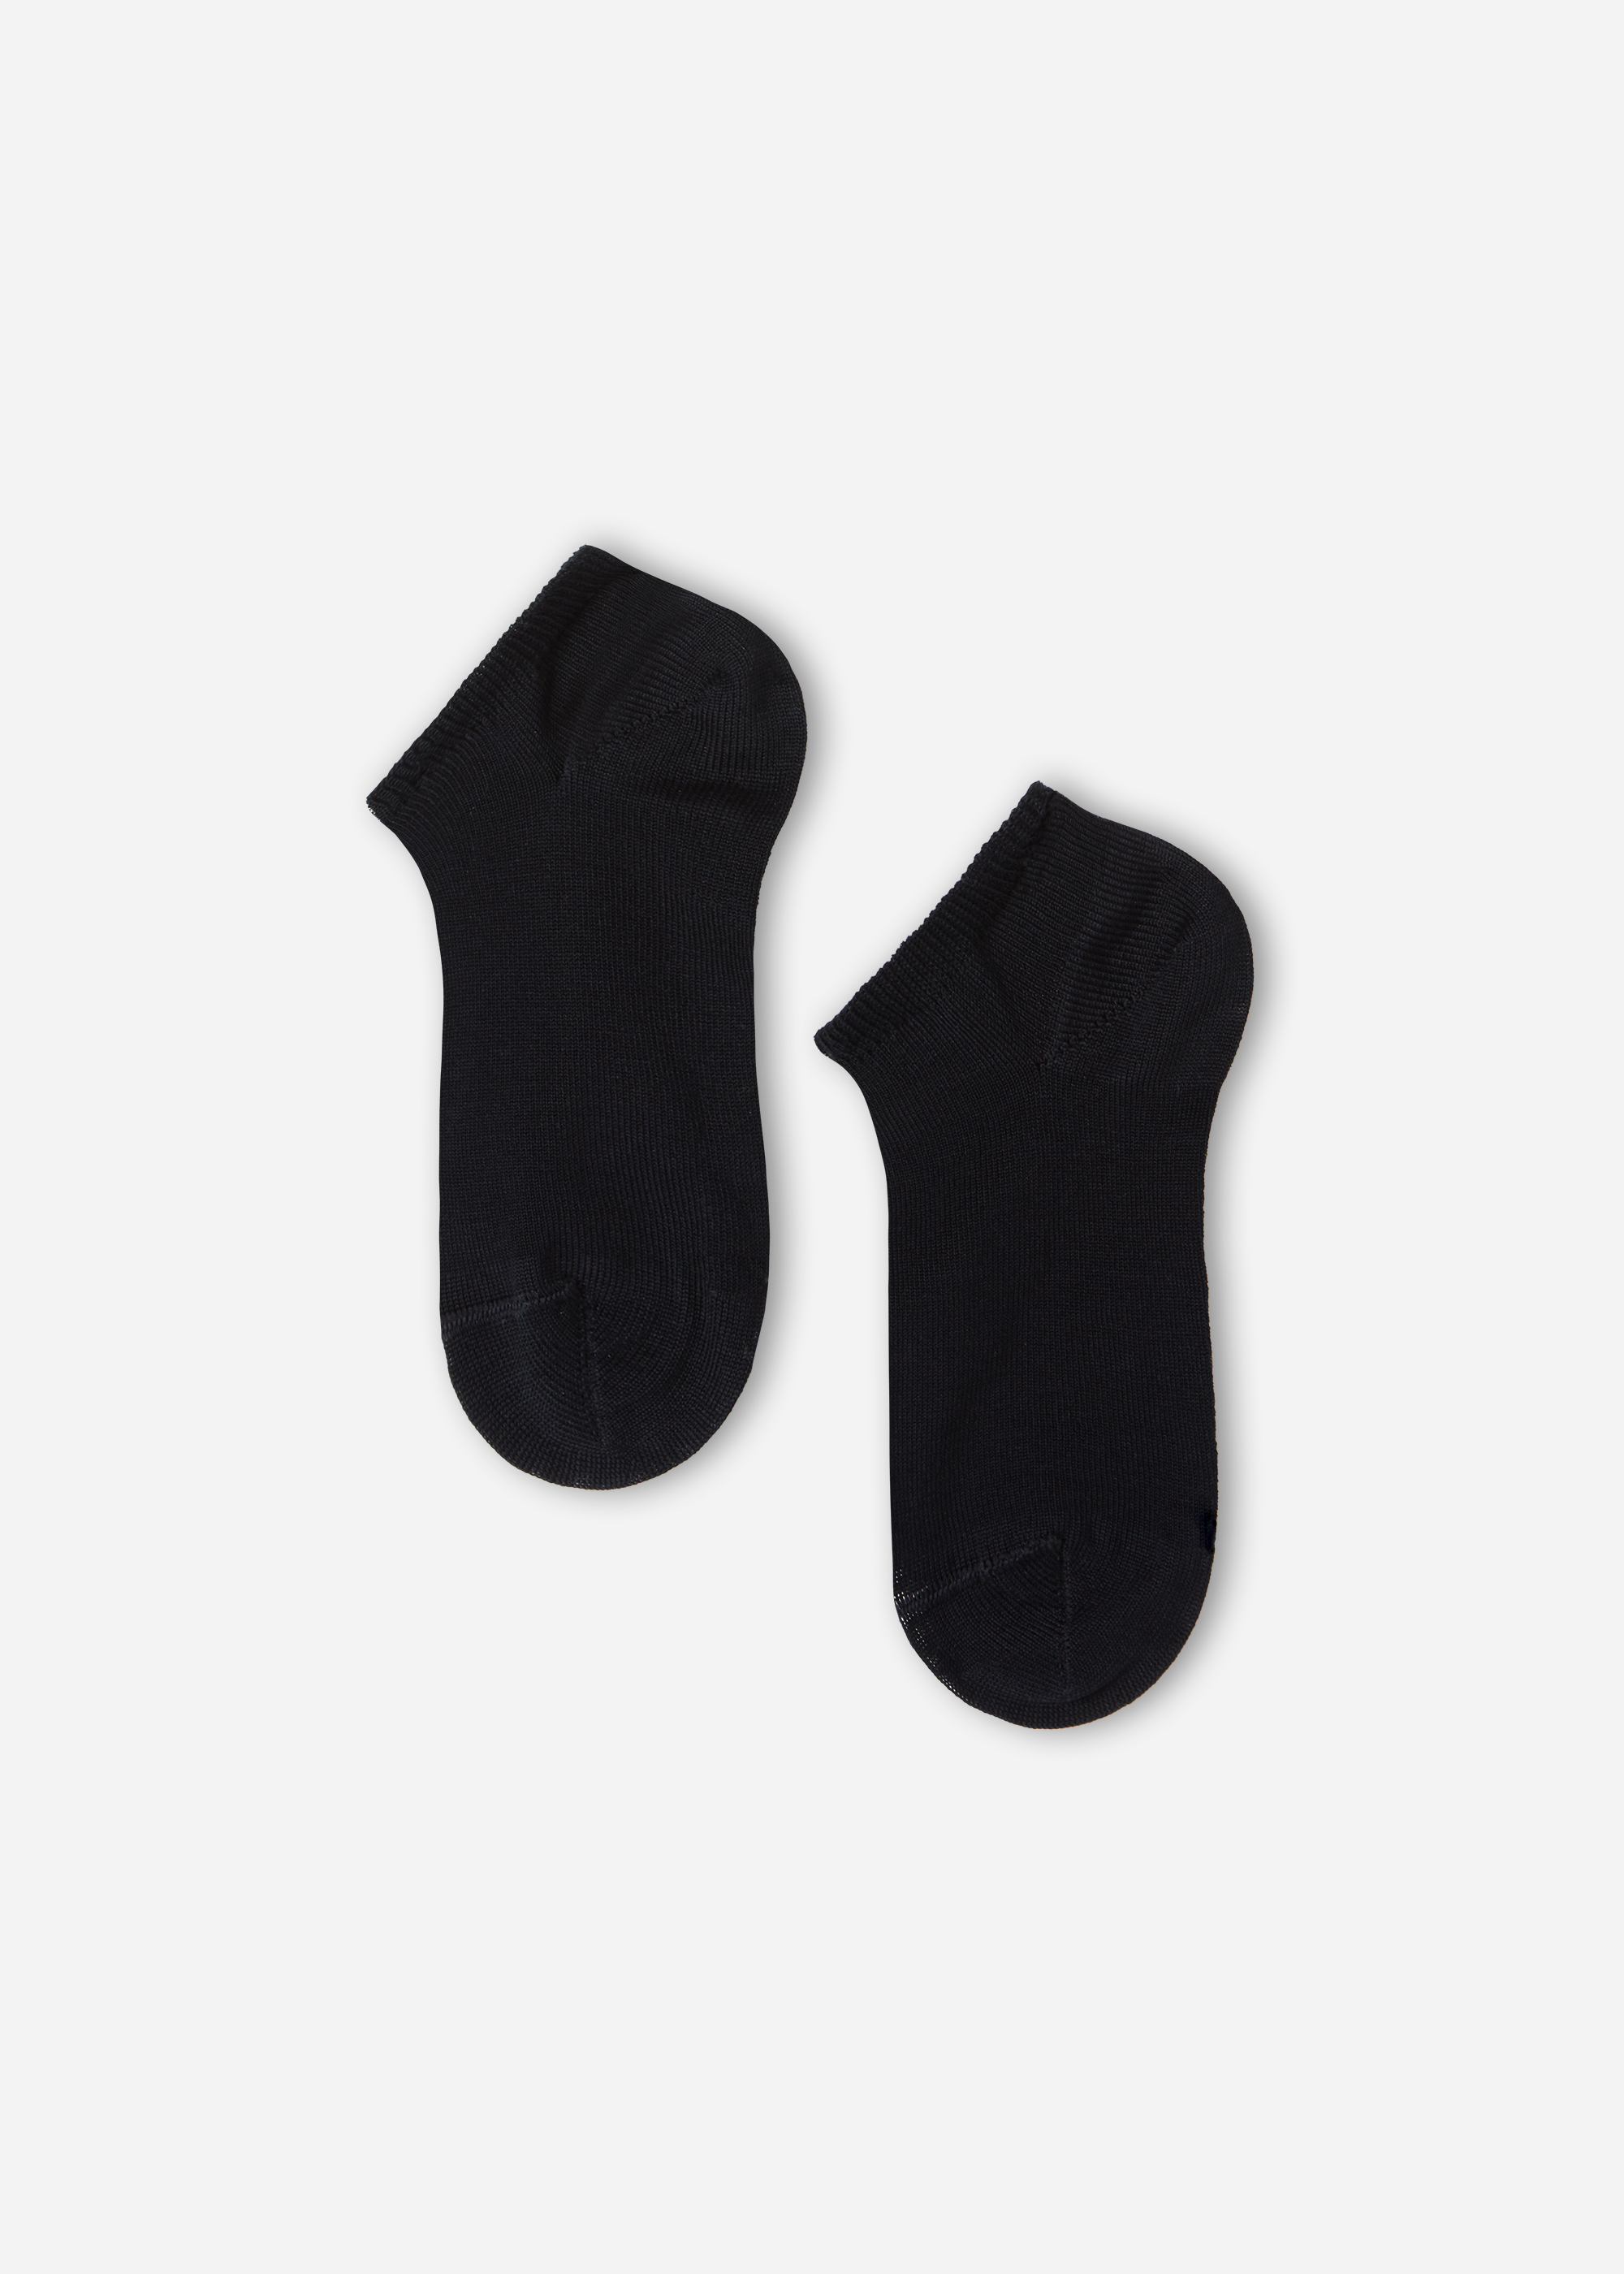 Children's Light Cotton Ankle Socks - Short socks - Calzedonia